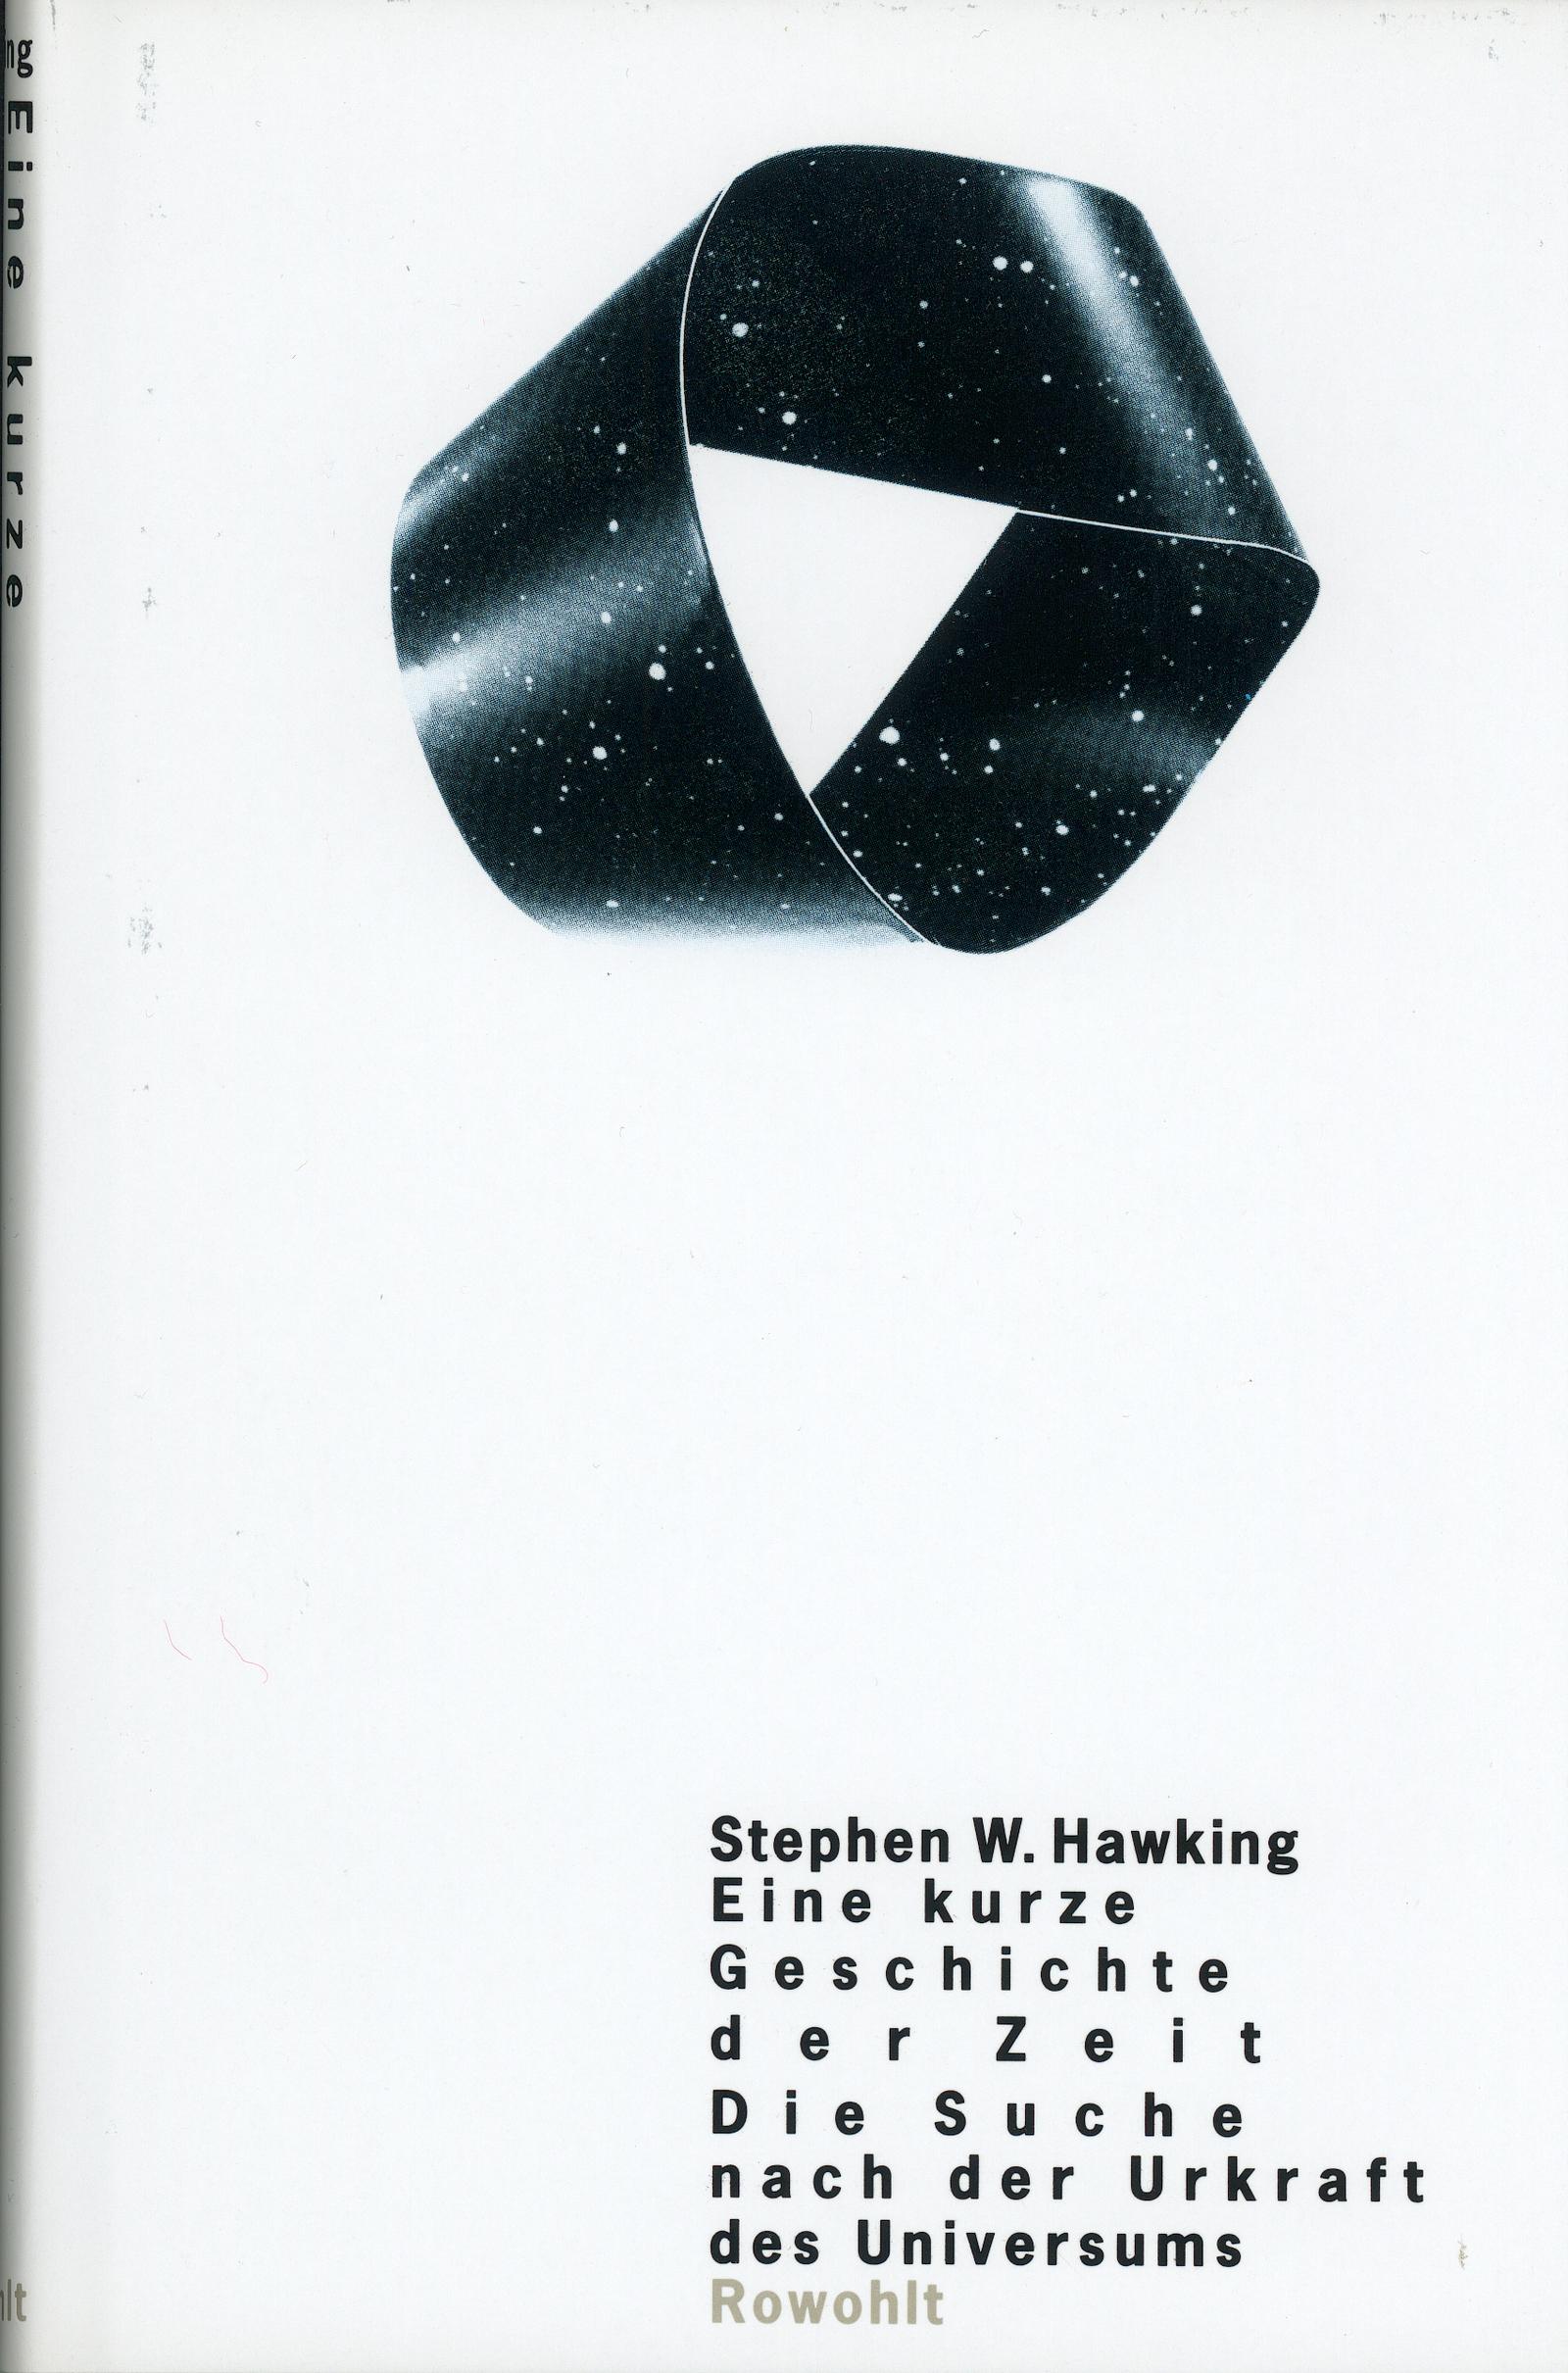 NEU Eine kurze Geschichte der Zeit Stephen Hawking 028848 - Picture 1 of 1